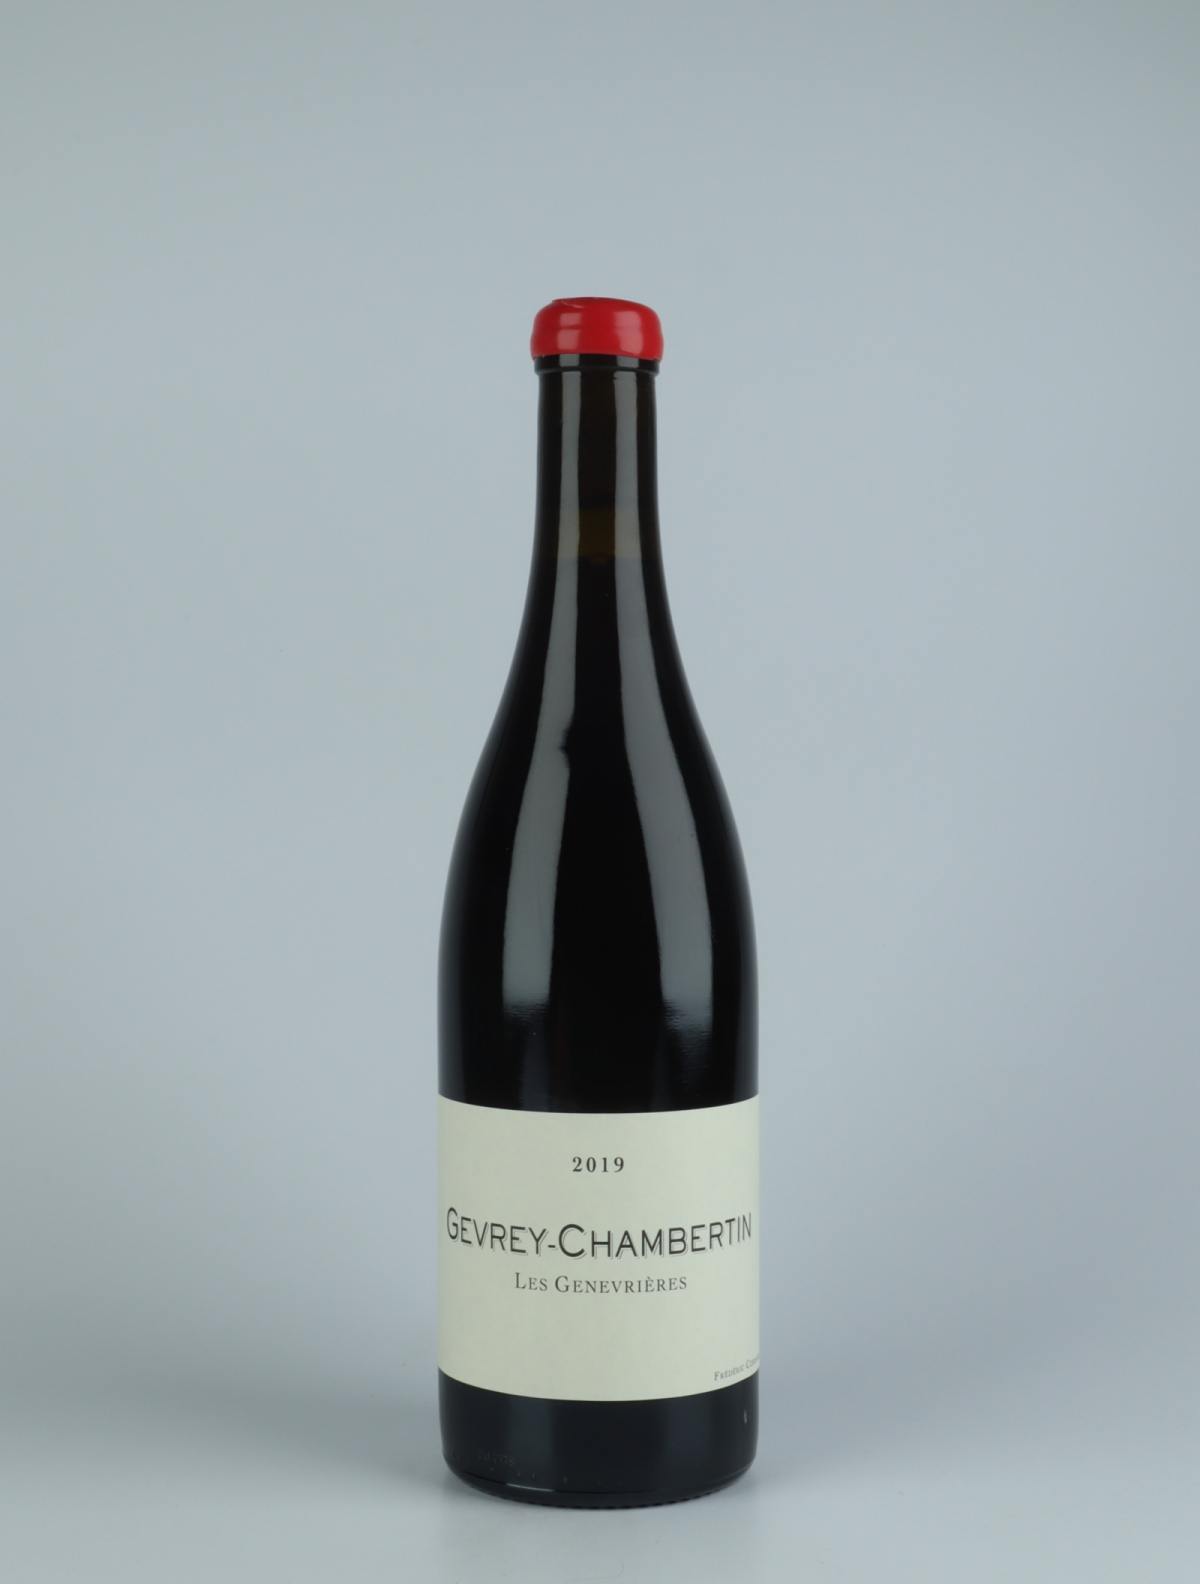 En flaske 2019 Gevrey Chambertin - Les Genevrières - Qvevris Rødvin fra Frédéric Cossard, Bourgogne i Frankrig